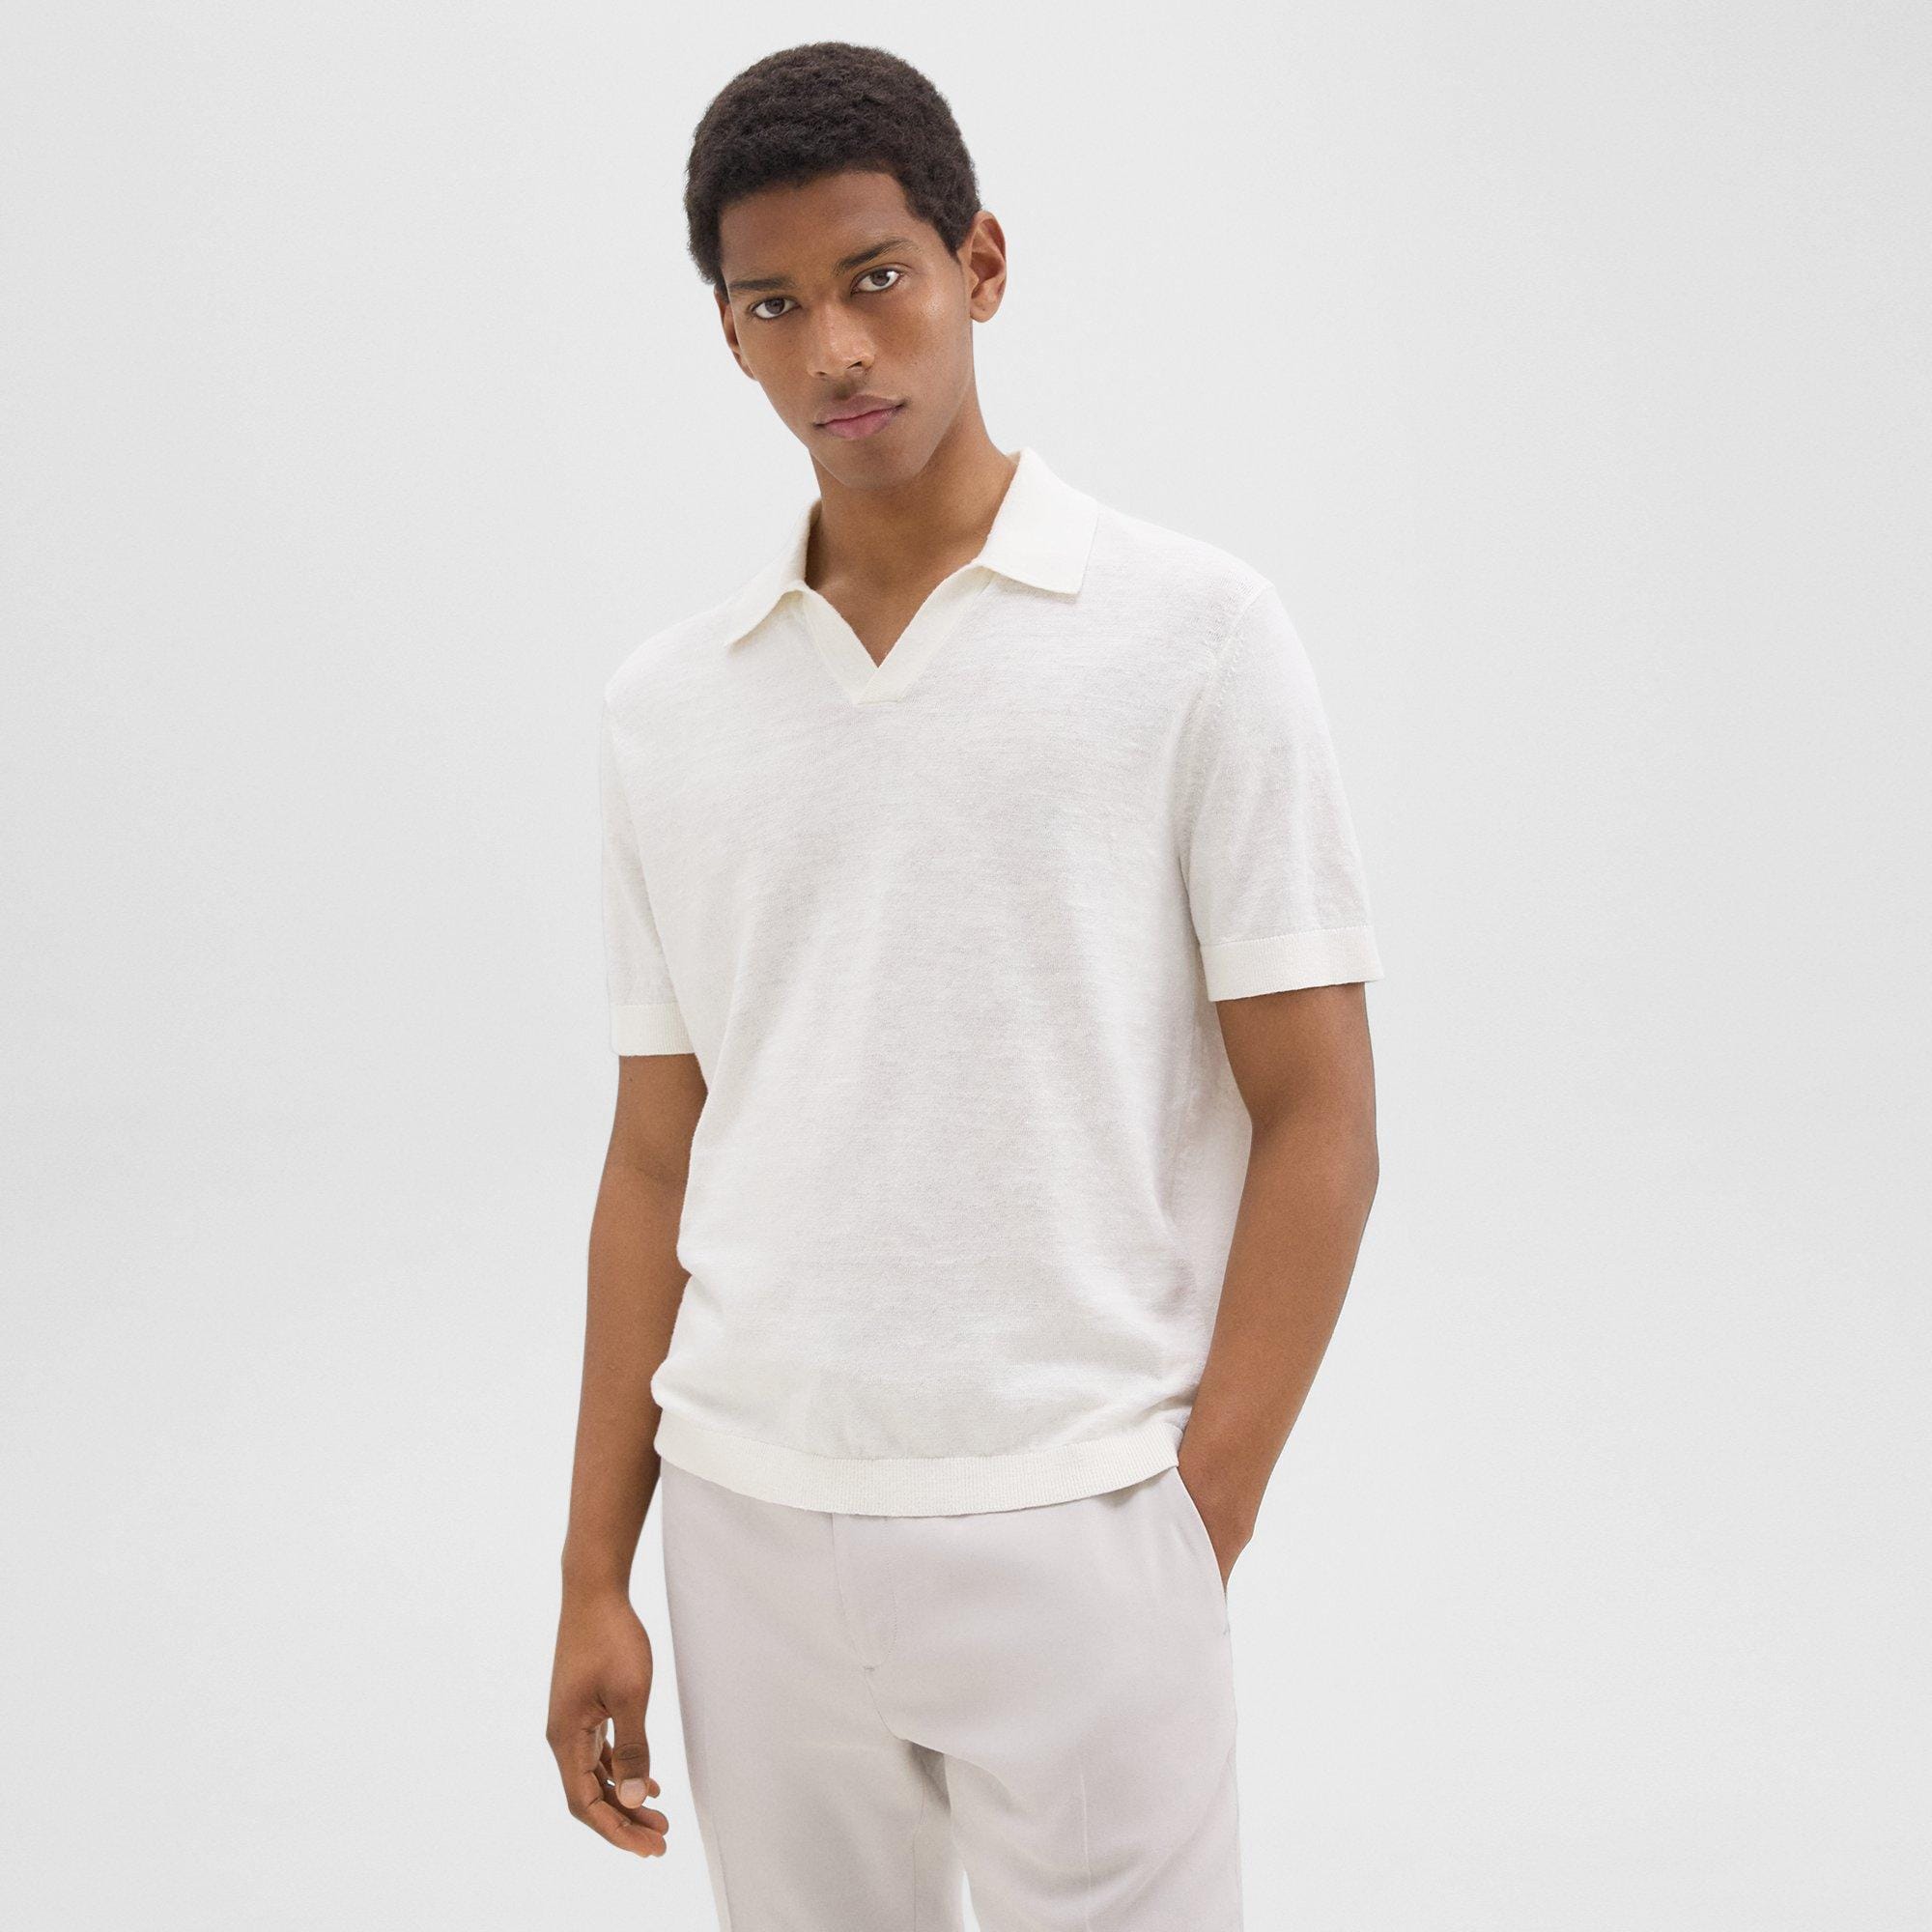 Theory Brenan Polo Shirt in Cotton-Linen